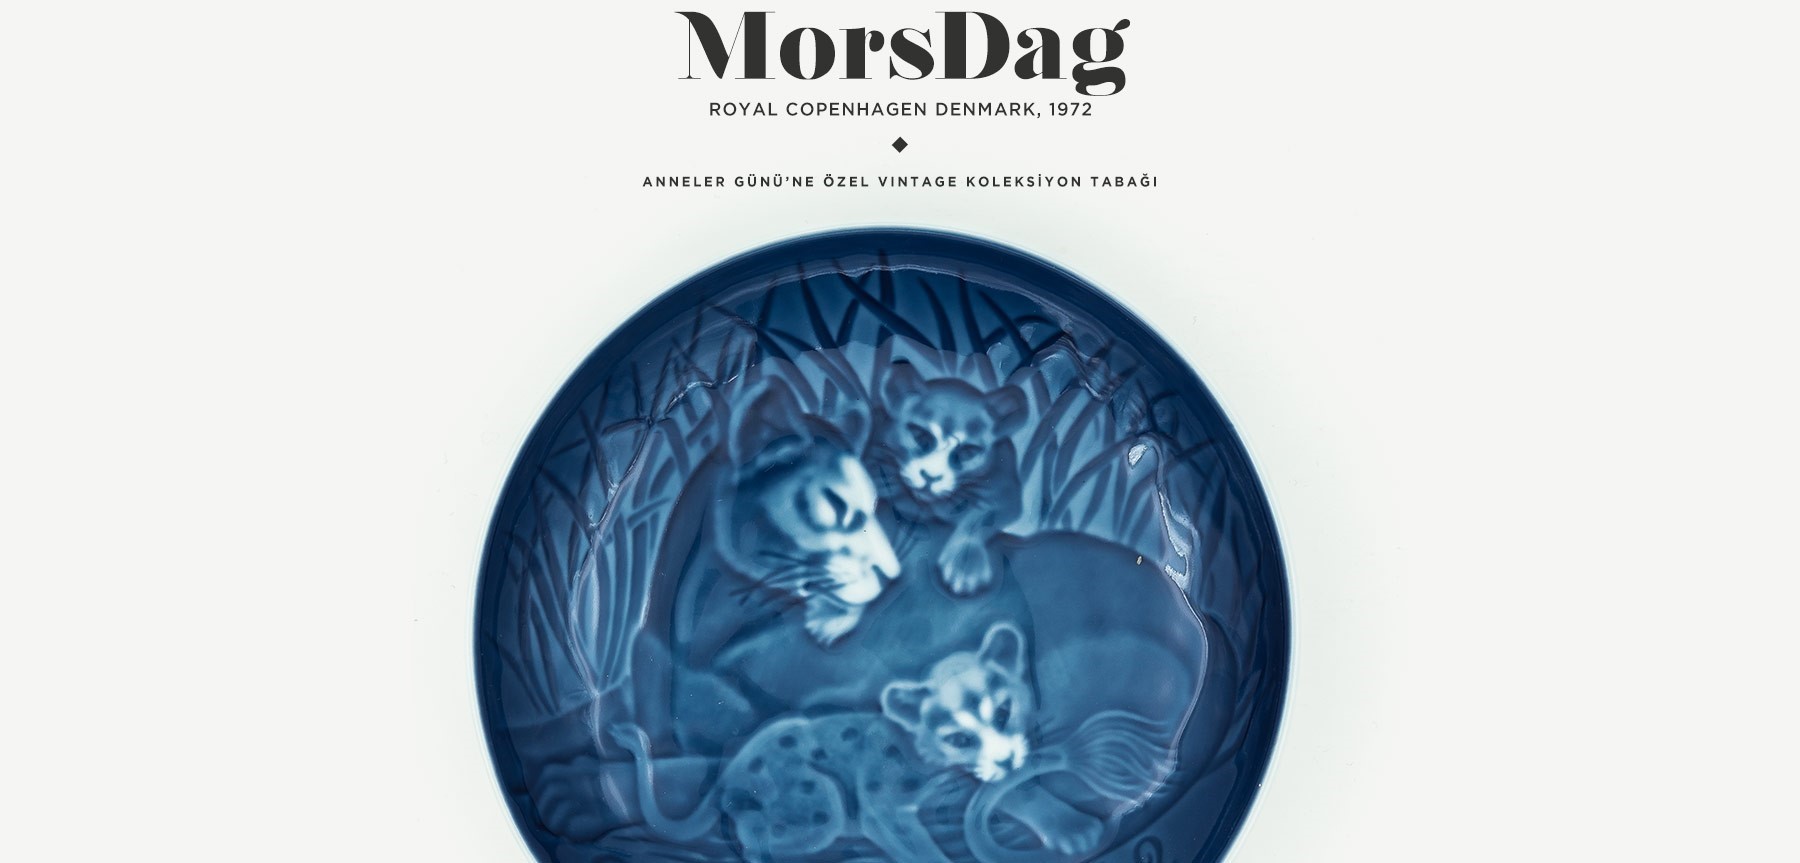 royal copenhagen mors dag koleksiyon tabağı'in resmi